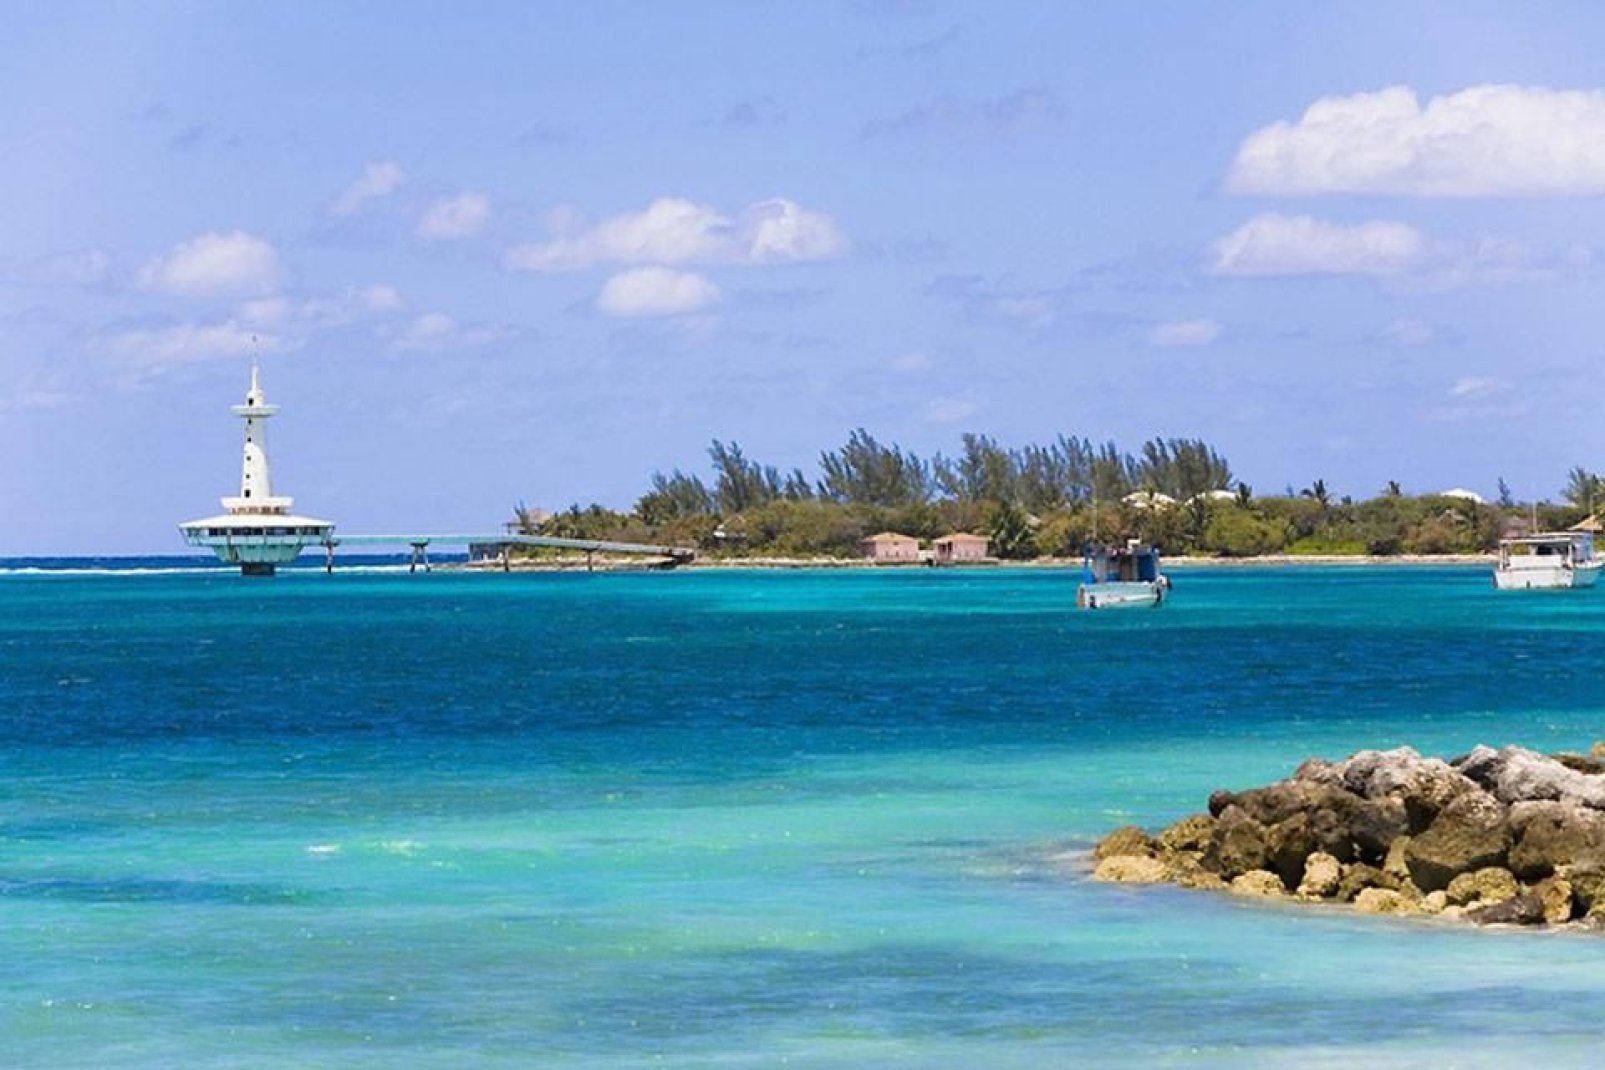 Trotz des bedeutenden Schiffsverkehrs hat der Hafen von Nassau seine idyllischen glasklaren Gewässer bewahrt.